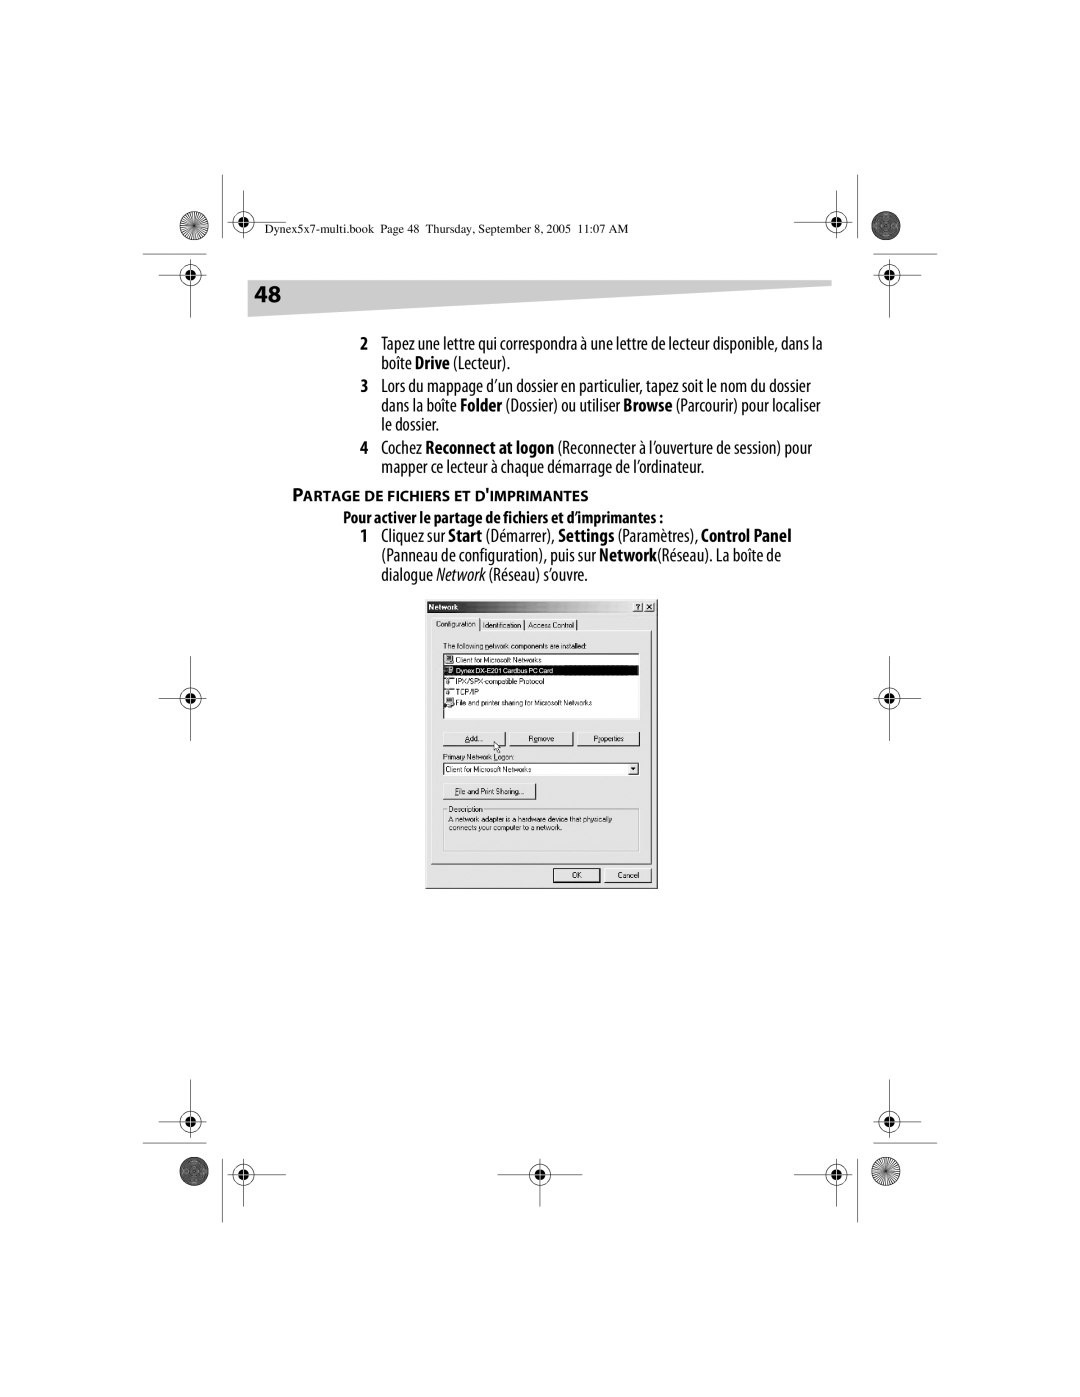 Dynex DX-E201 manual Pour activer le partage de fichiers et d’imprimantes, Partage De Fichiers Et Dimprimantes 